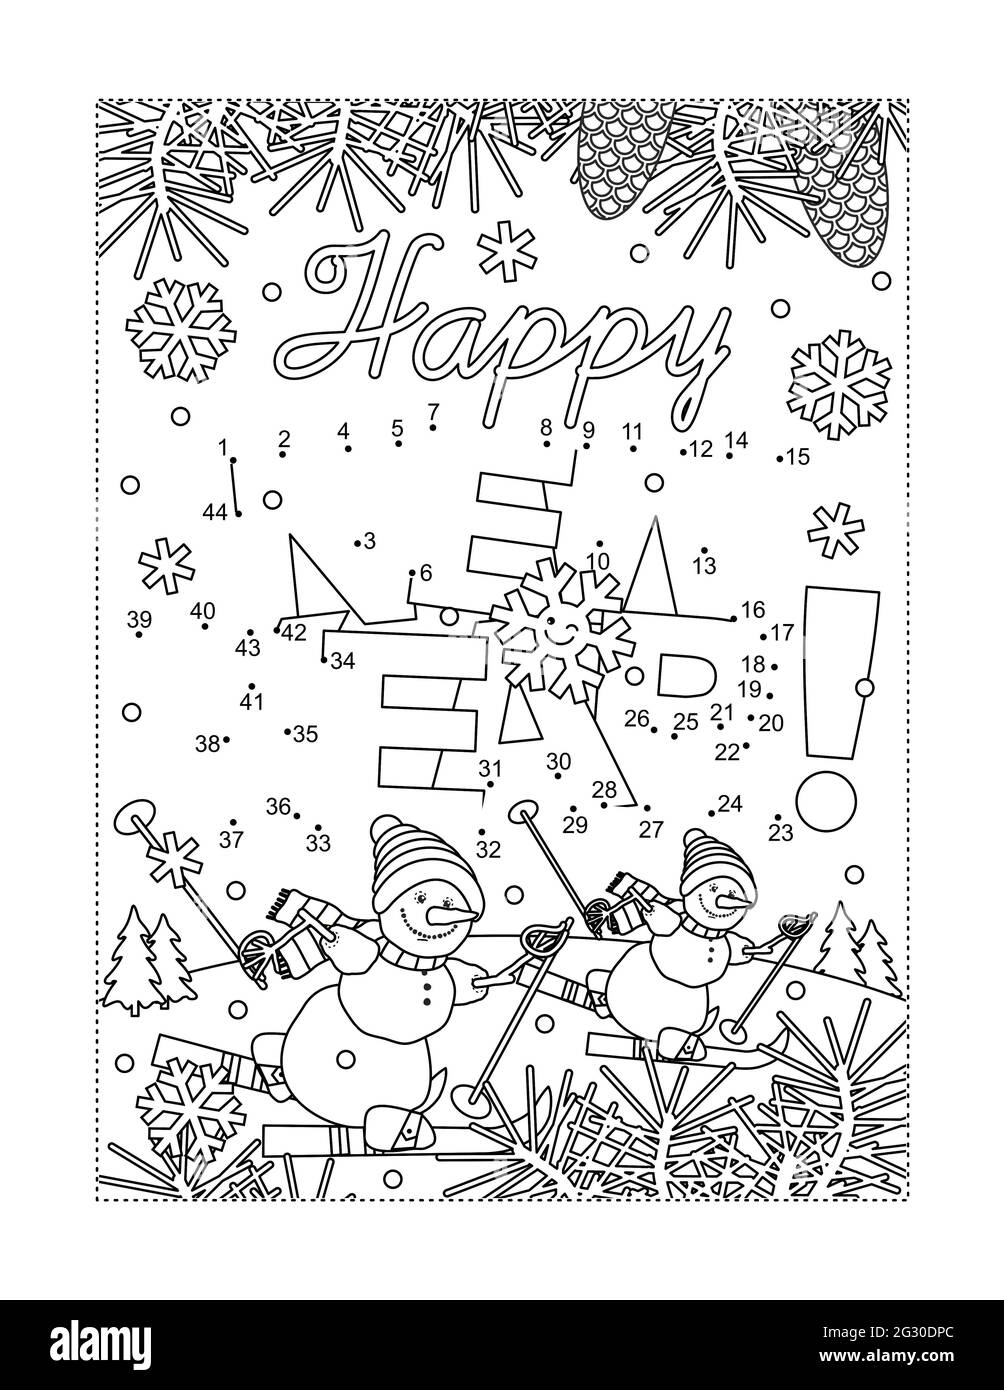 Feliz saludo de Año Nuevo conectar el rompecabezas de puntos y la página de colorear con texto de saludo y dos muñecos de nieve de esquí en la escena de invierno Foto de stock